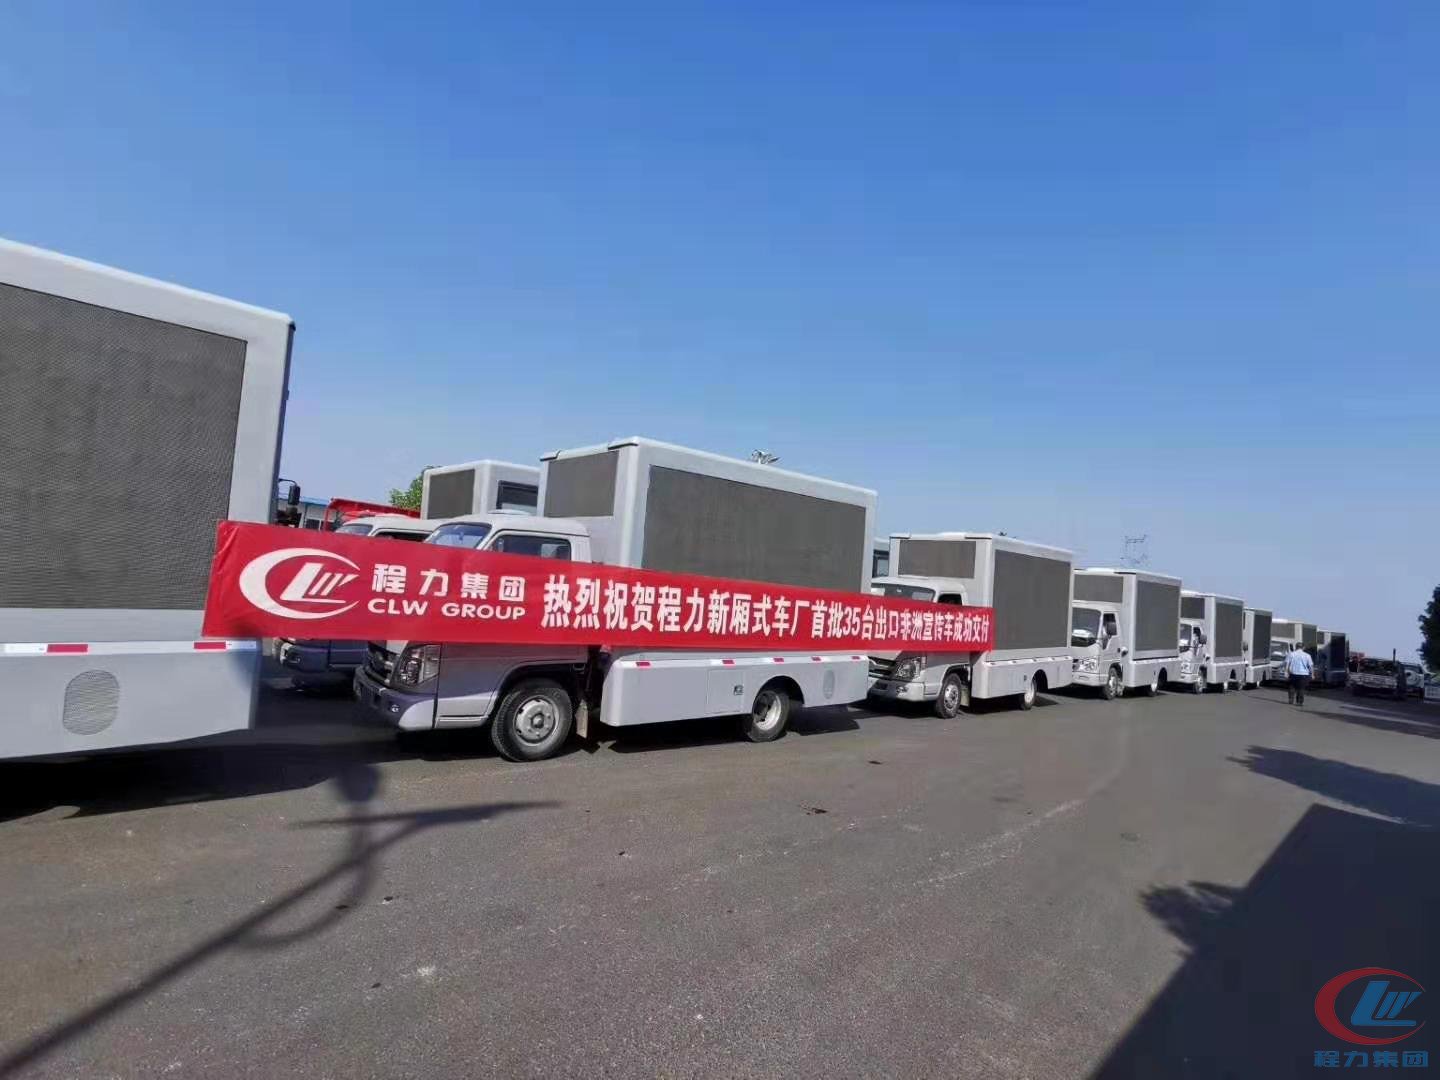 j9.com(中国区)官方网站集团出口非洲35台LED广告车